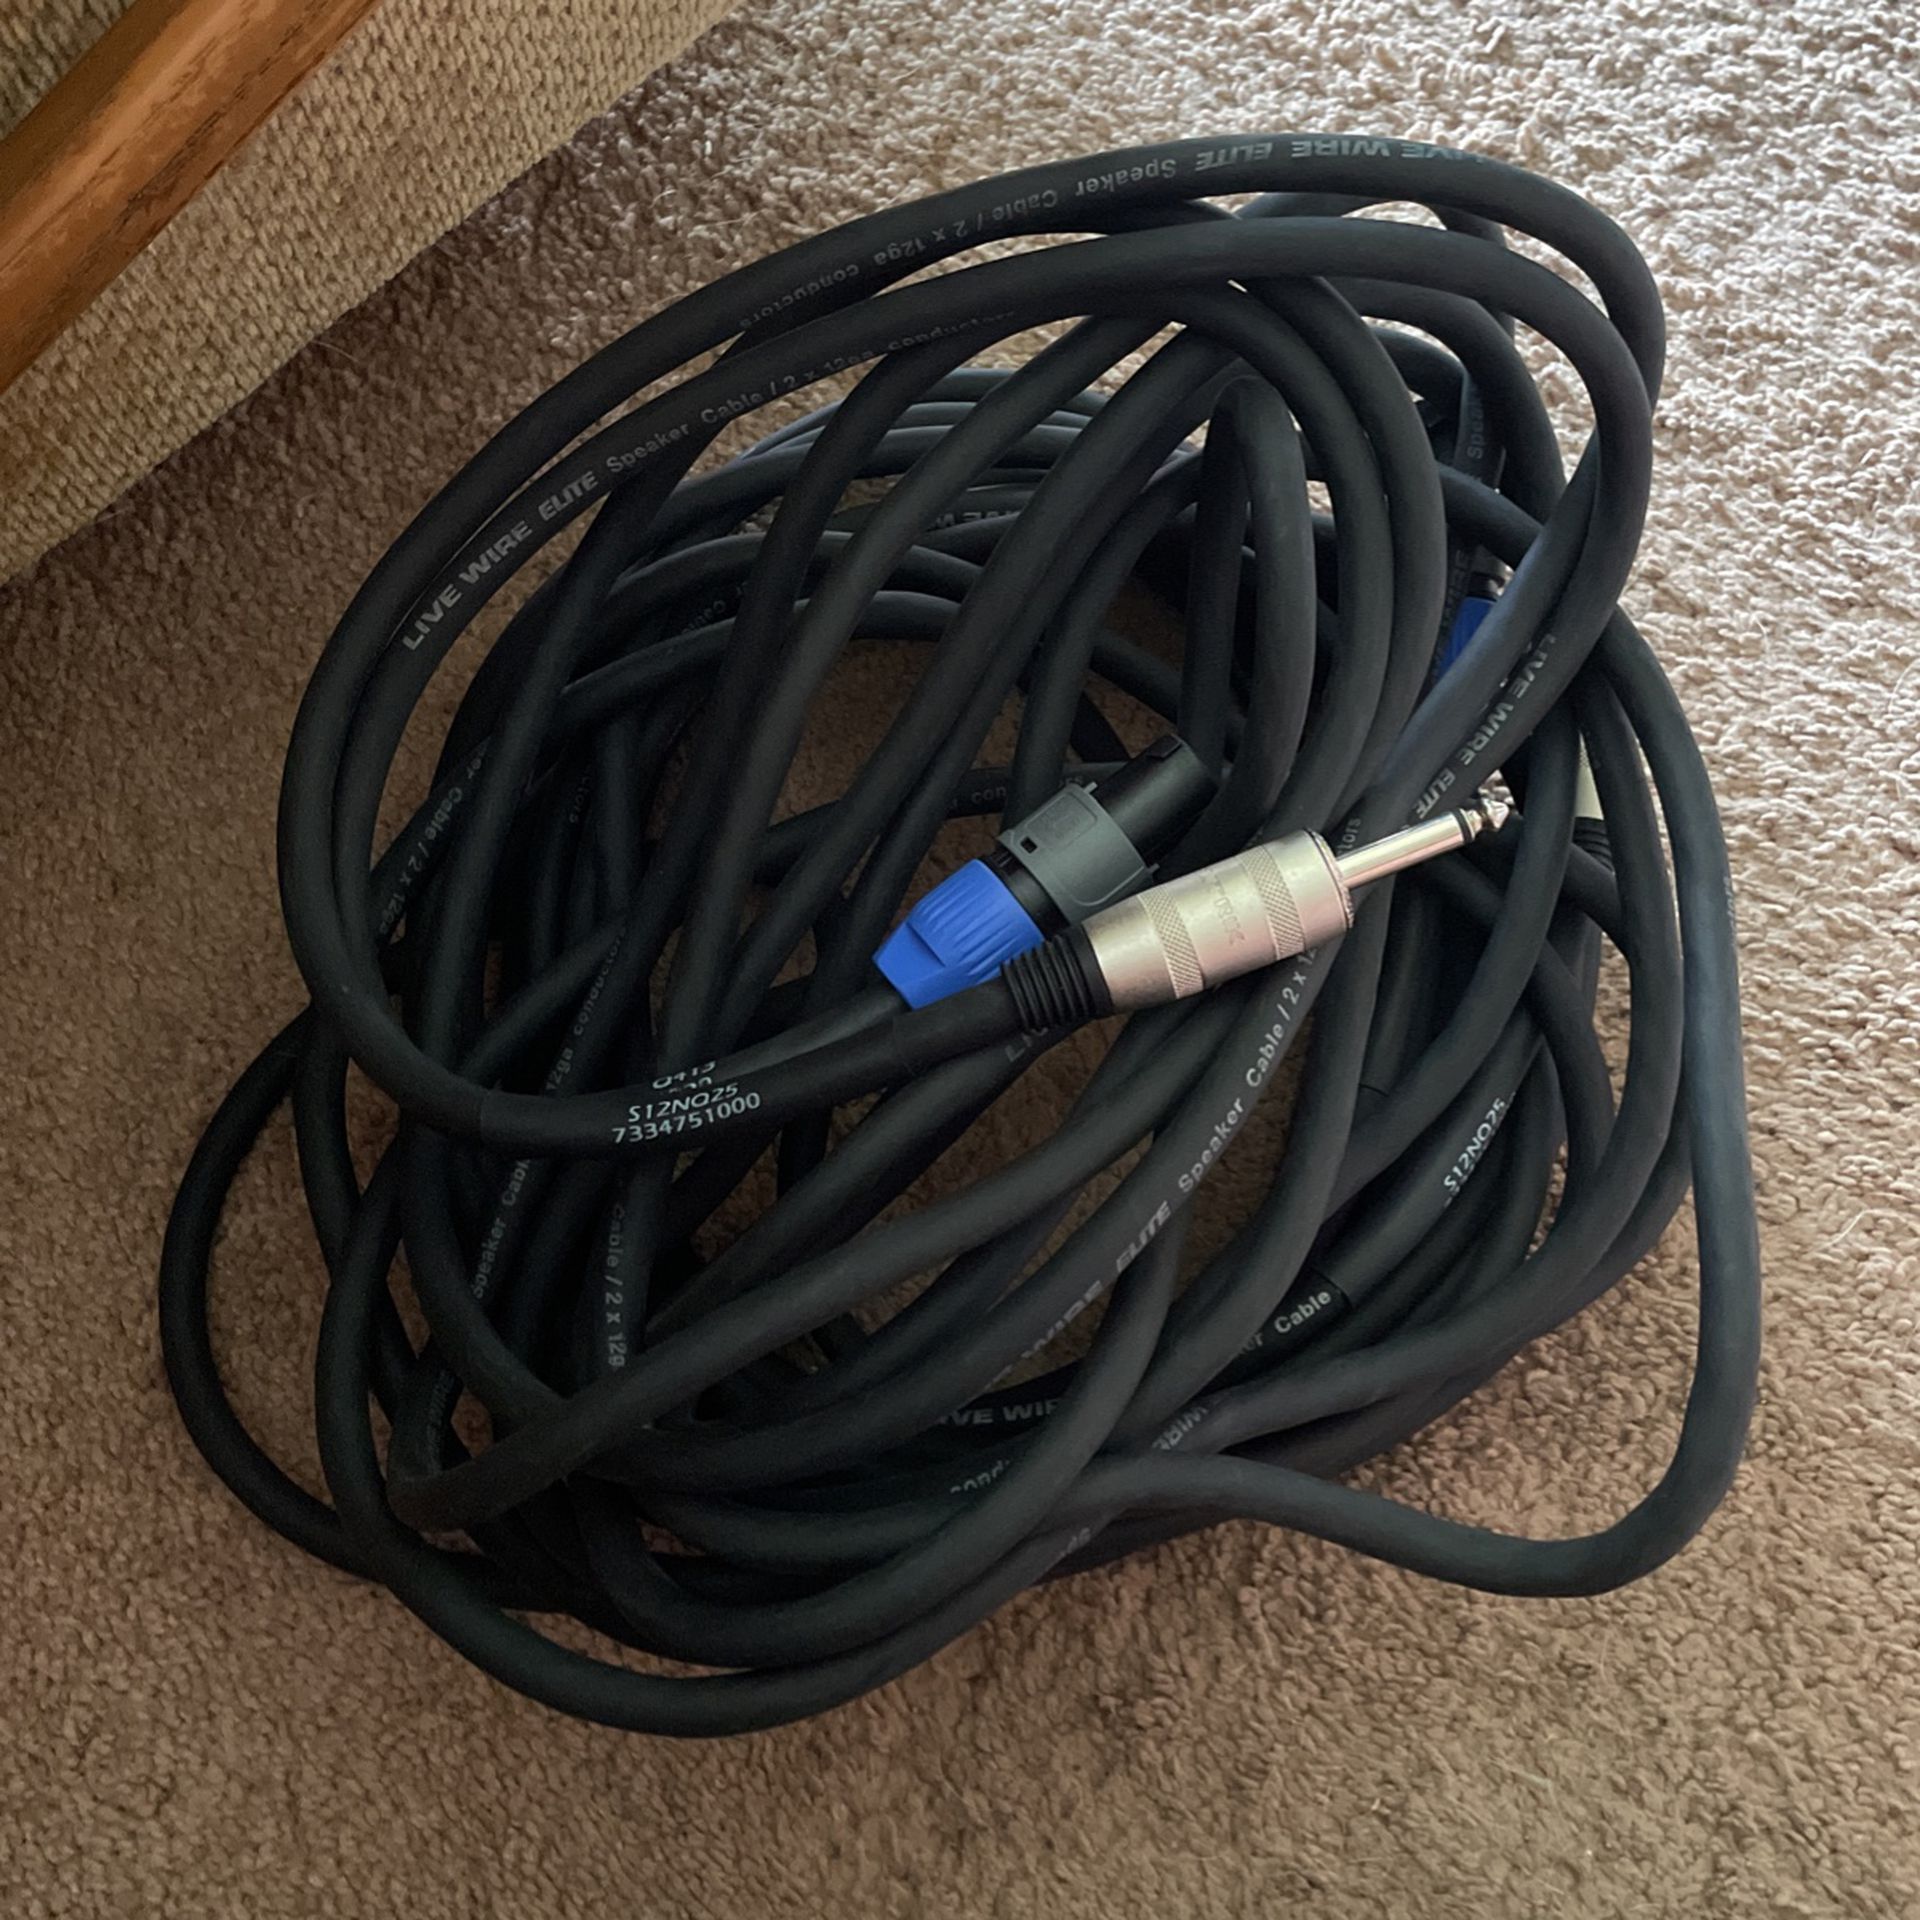  2        25 Ft Speaker cords